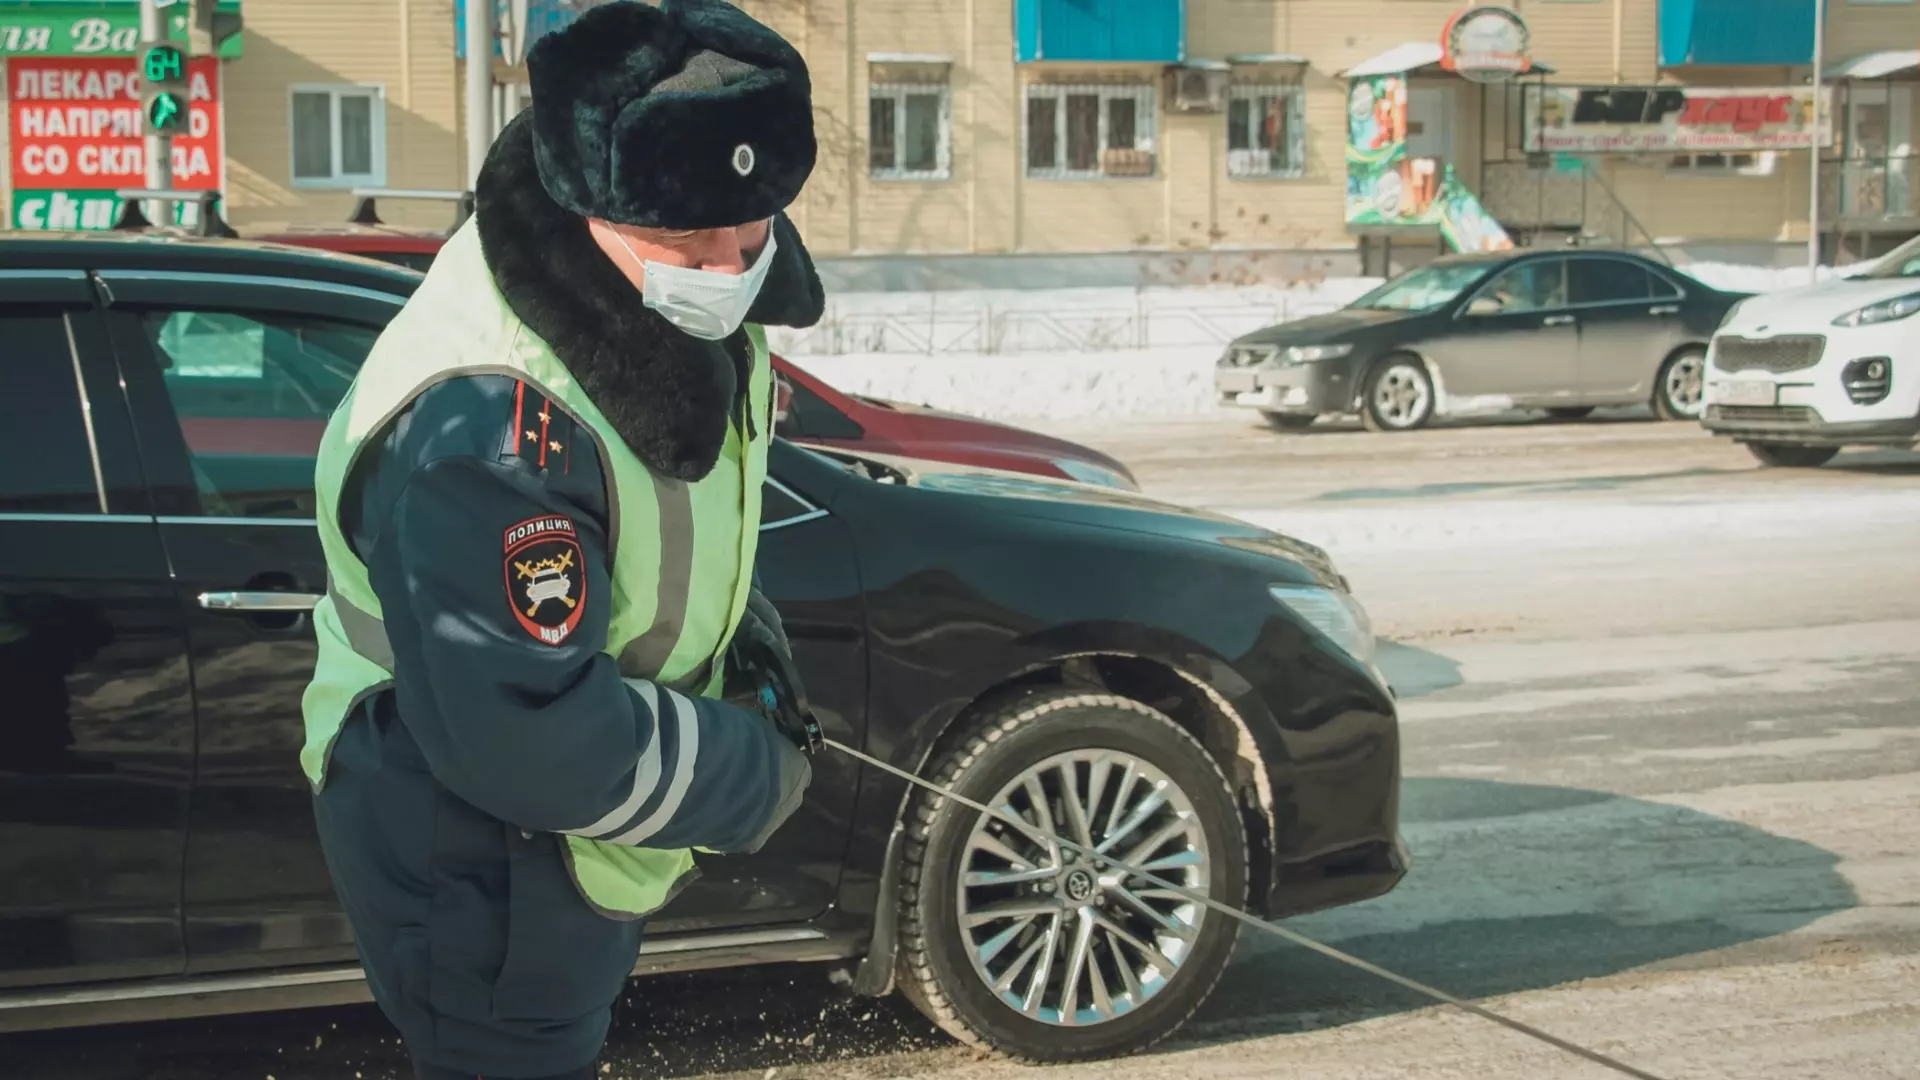 ДТП и погоня со стрельбой: понедельник в Челябинской области